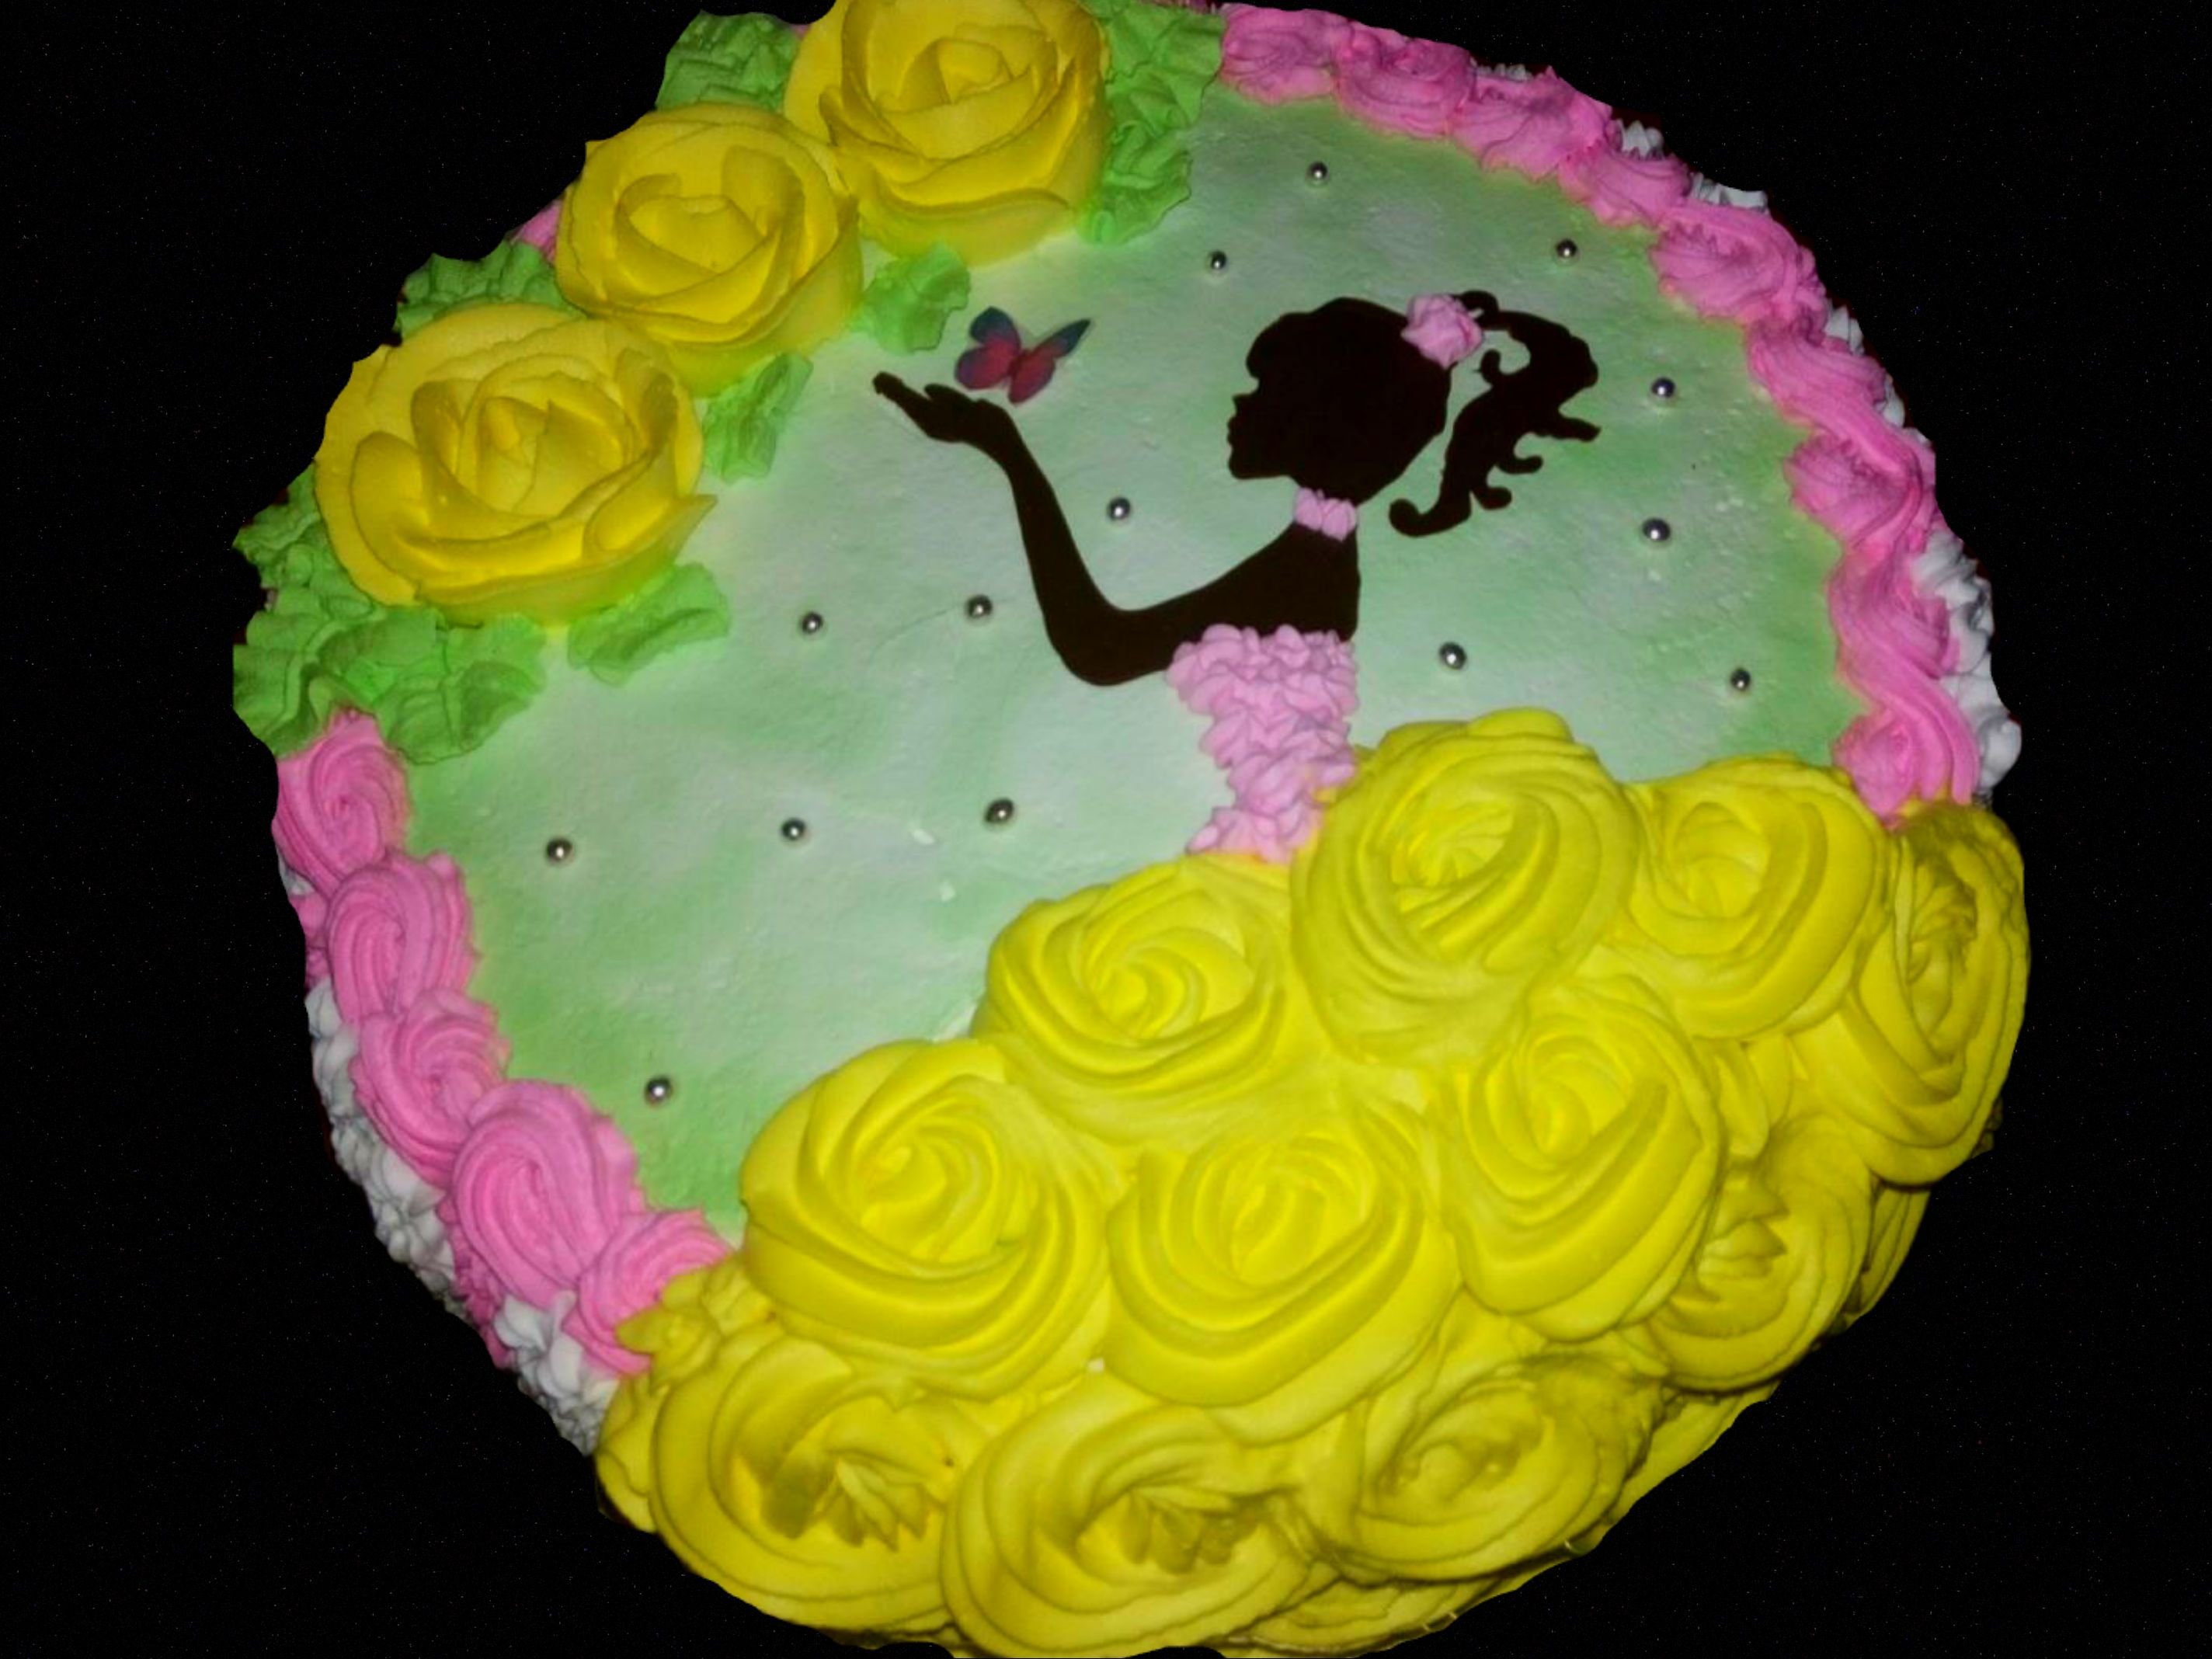 Фото тортов на день рождения девочке на 9 лет